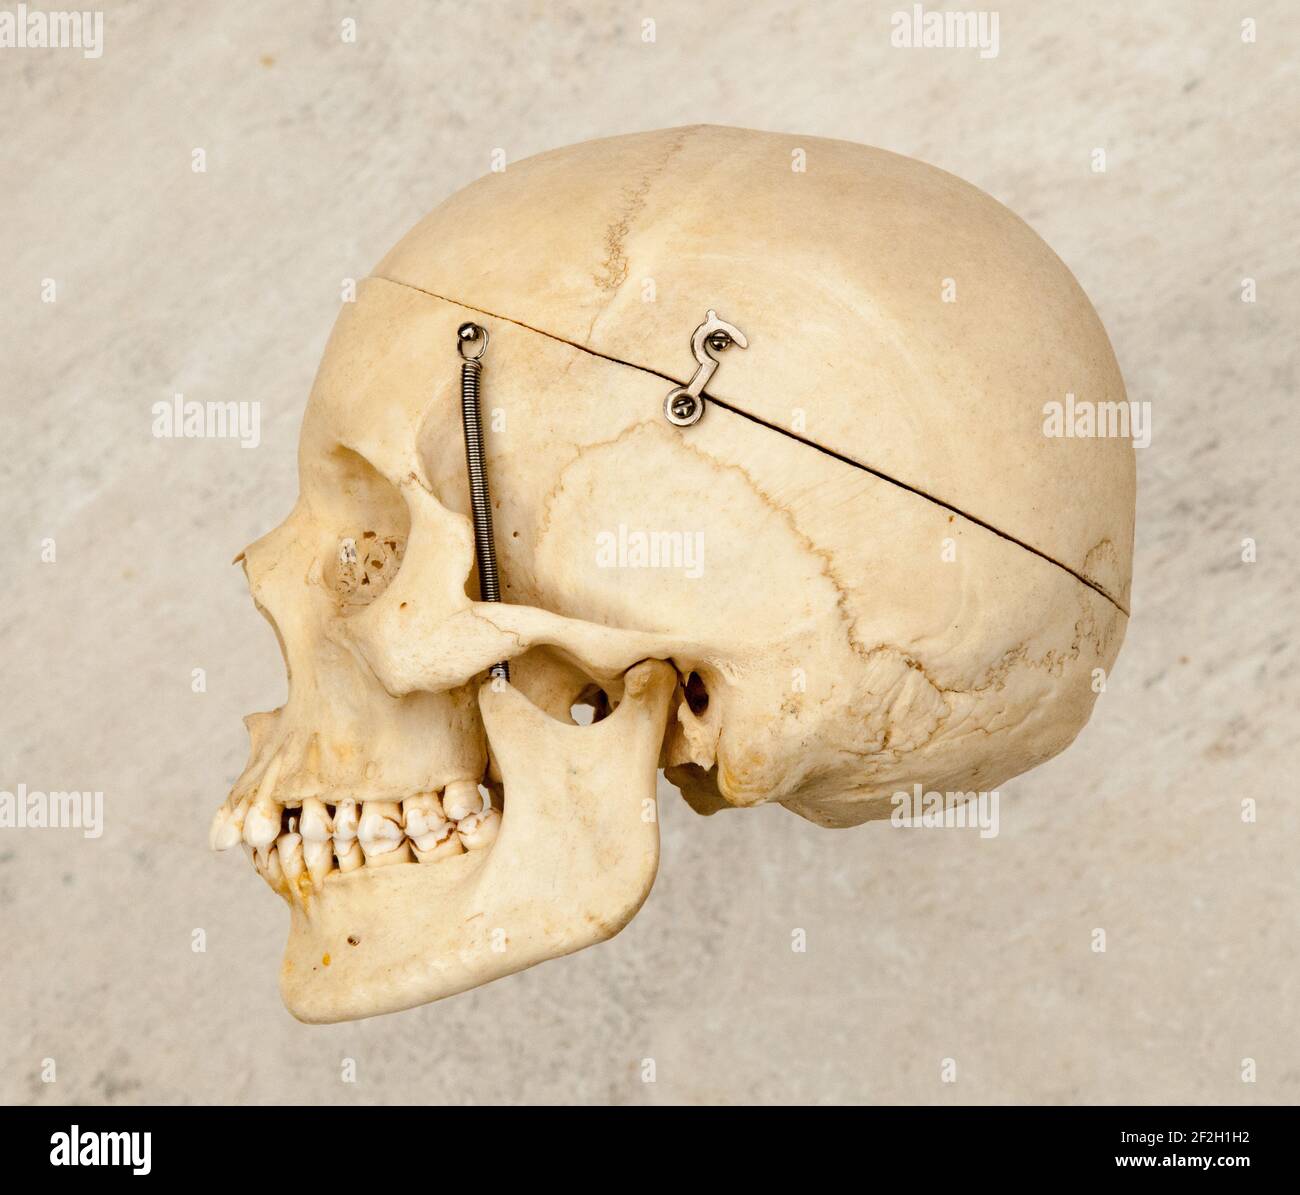 Vue latérale ou de profil d'un crâne humain qui a été préparé pour des études médicales. Banque D'Images